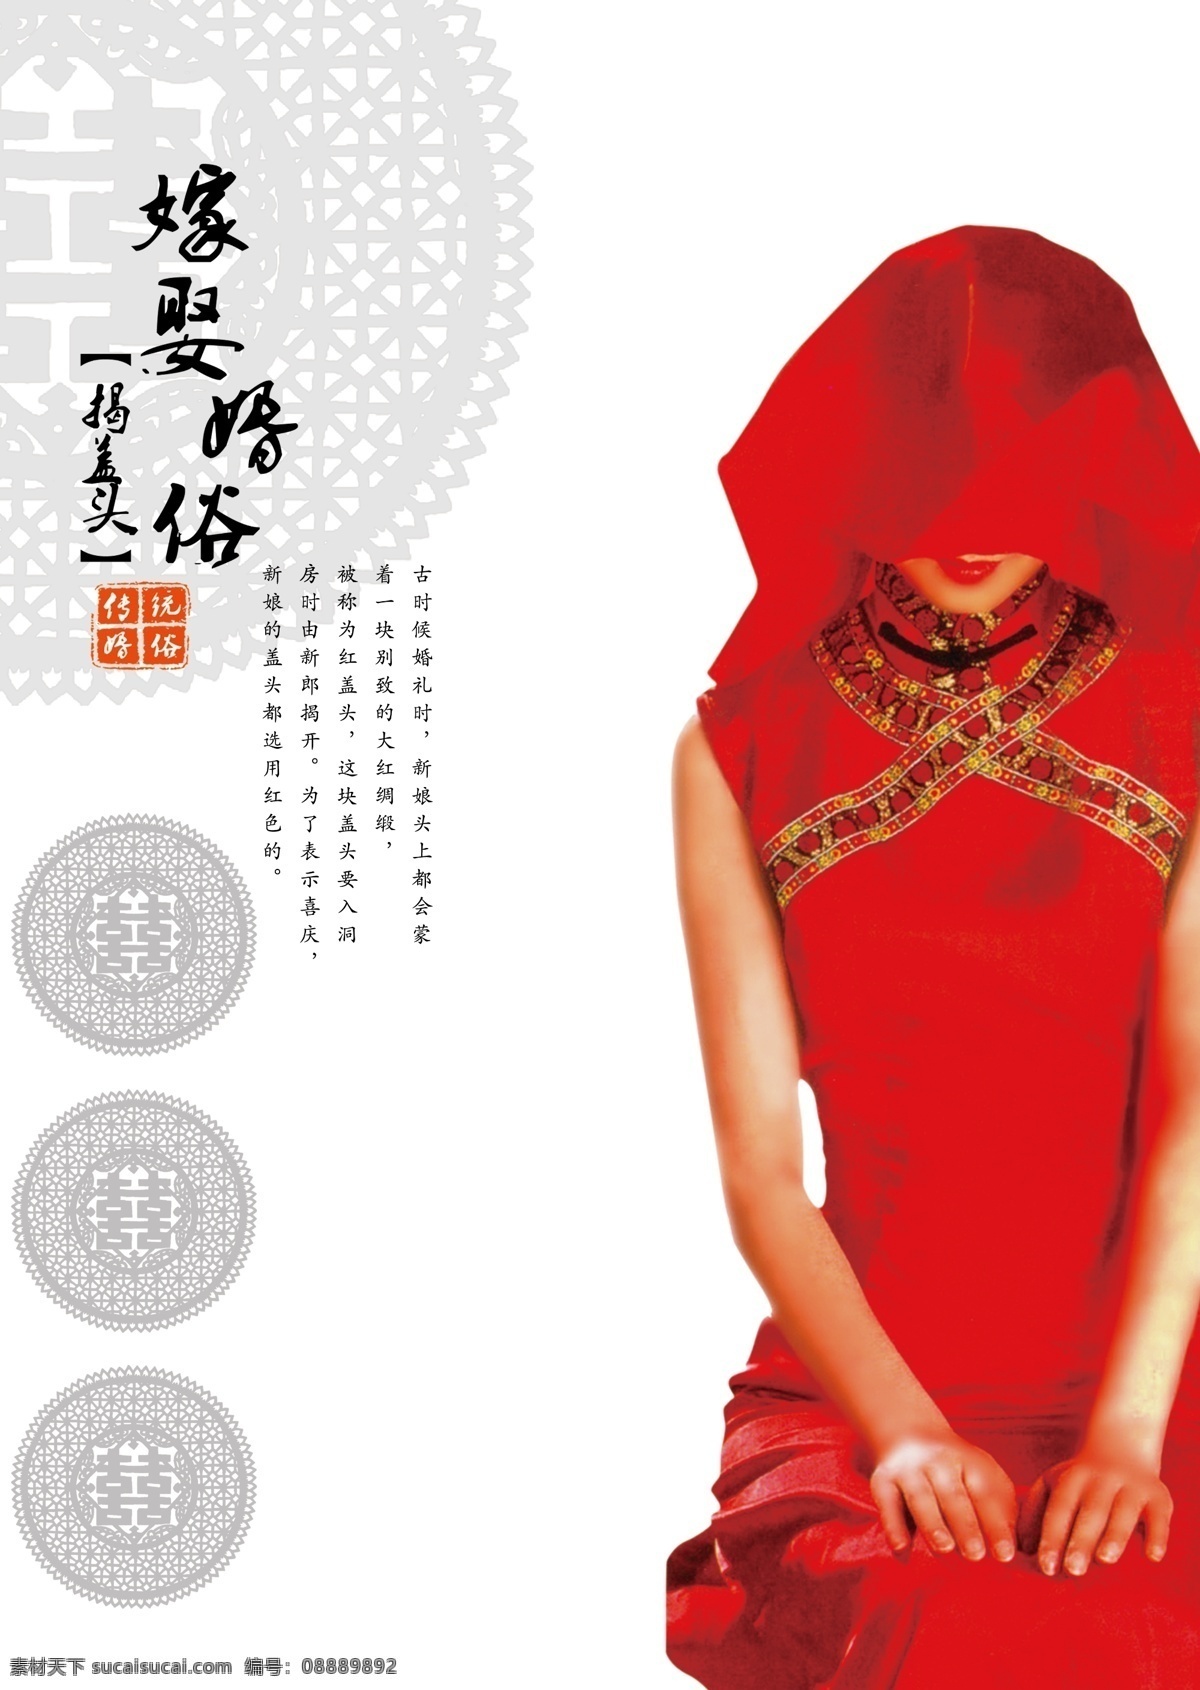 中国 婚俗 模板 民间婚俗海报 中国婚礼 美女 古典风 花纹 广告设计模板 源文件 psd素材 红色